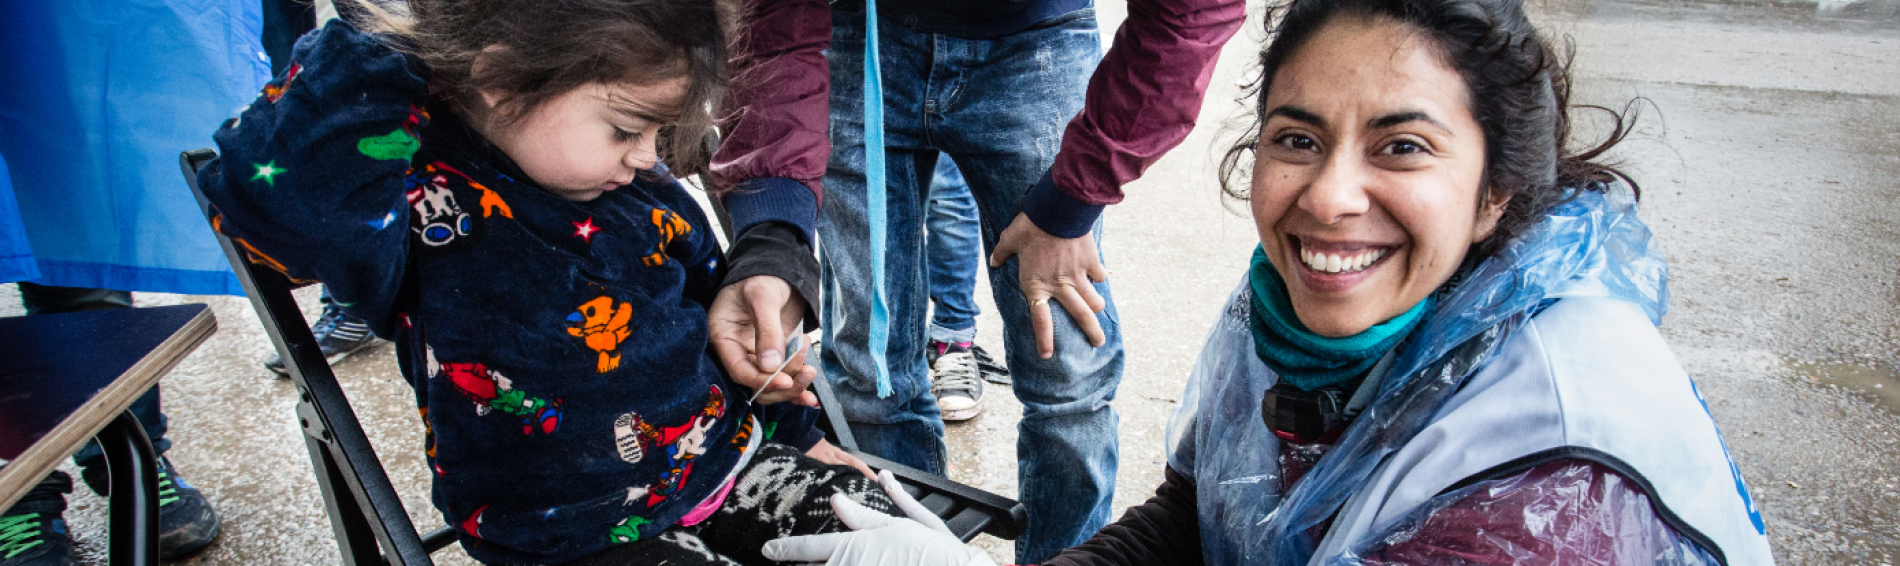 Une bénévole aide une petite fille dans les Balkans